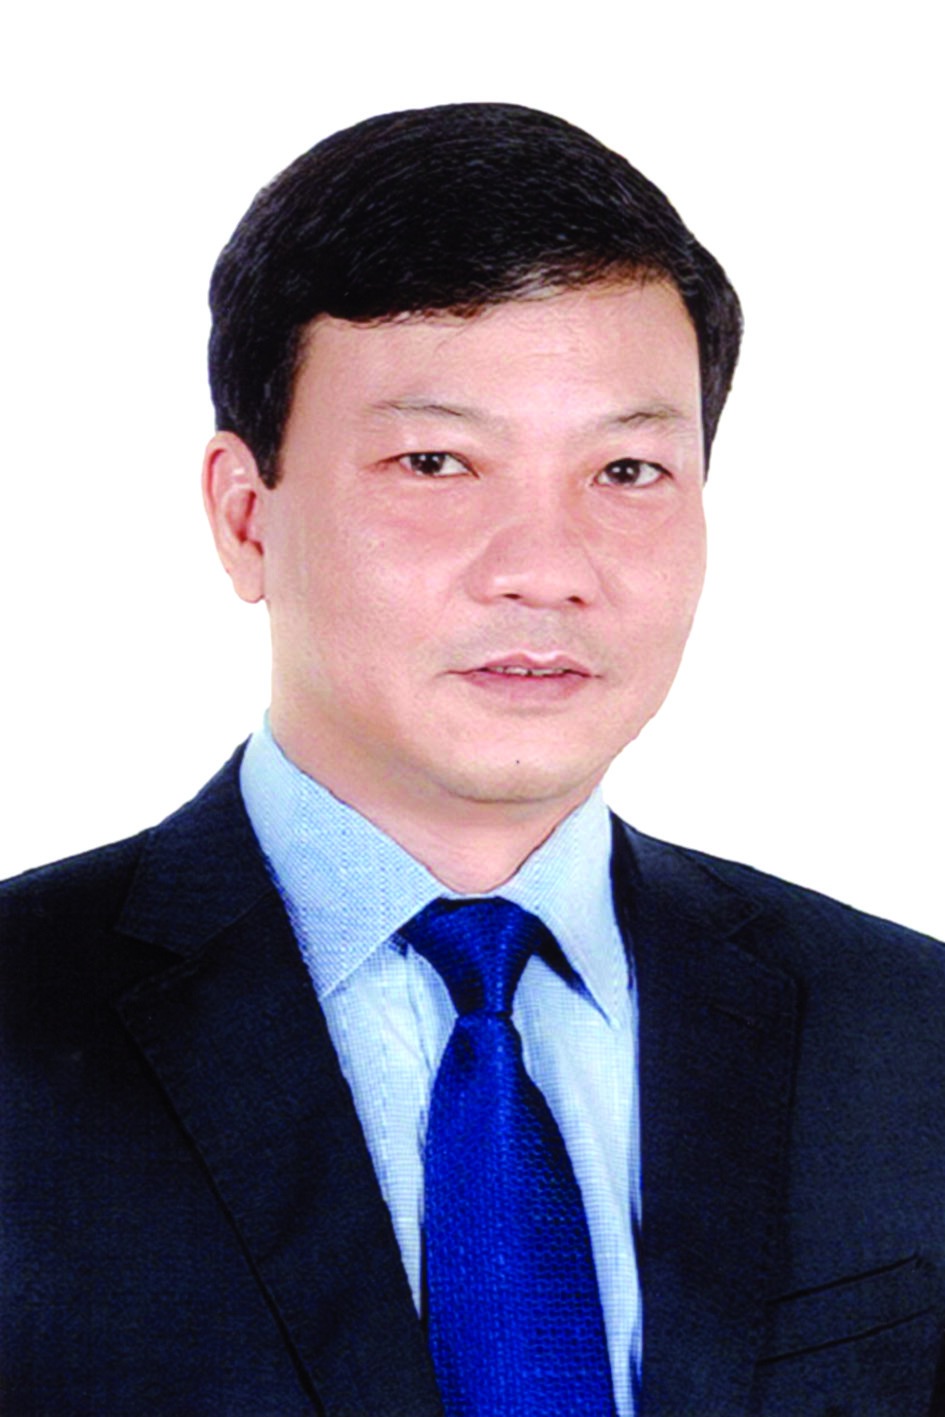 Chương trình hành động của Chủ tịch HĐTV Tổng công ty Đầu tư và Phát triển nhà Hà Nội Trương Hải Long, ứng cử viên đại biểu HĐND TP Hà Nội nhiệm kỳ 2021 - 2026 - Ảnh 1